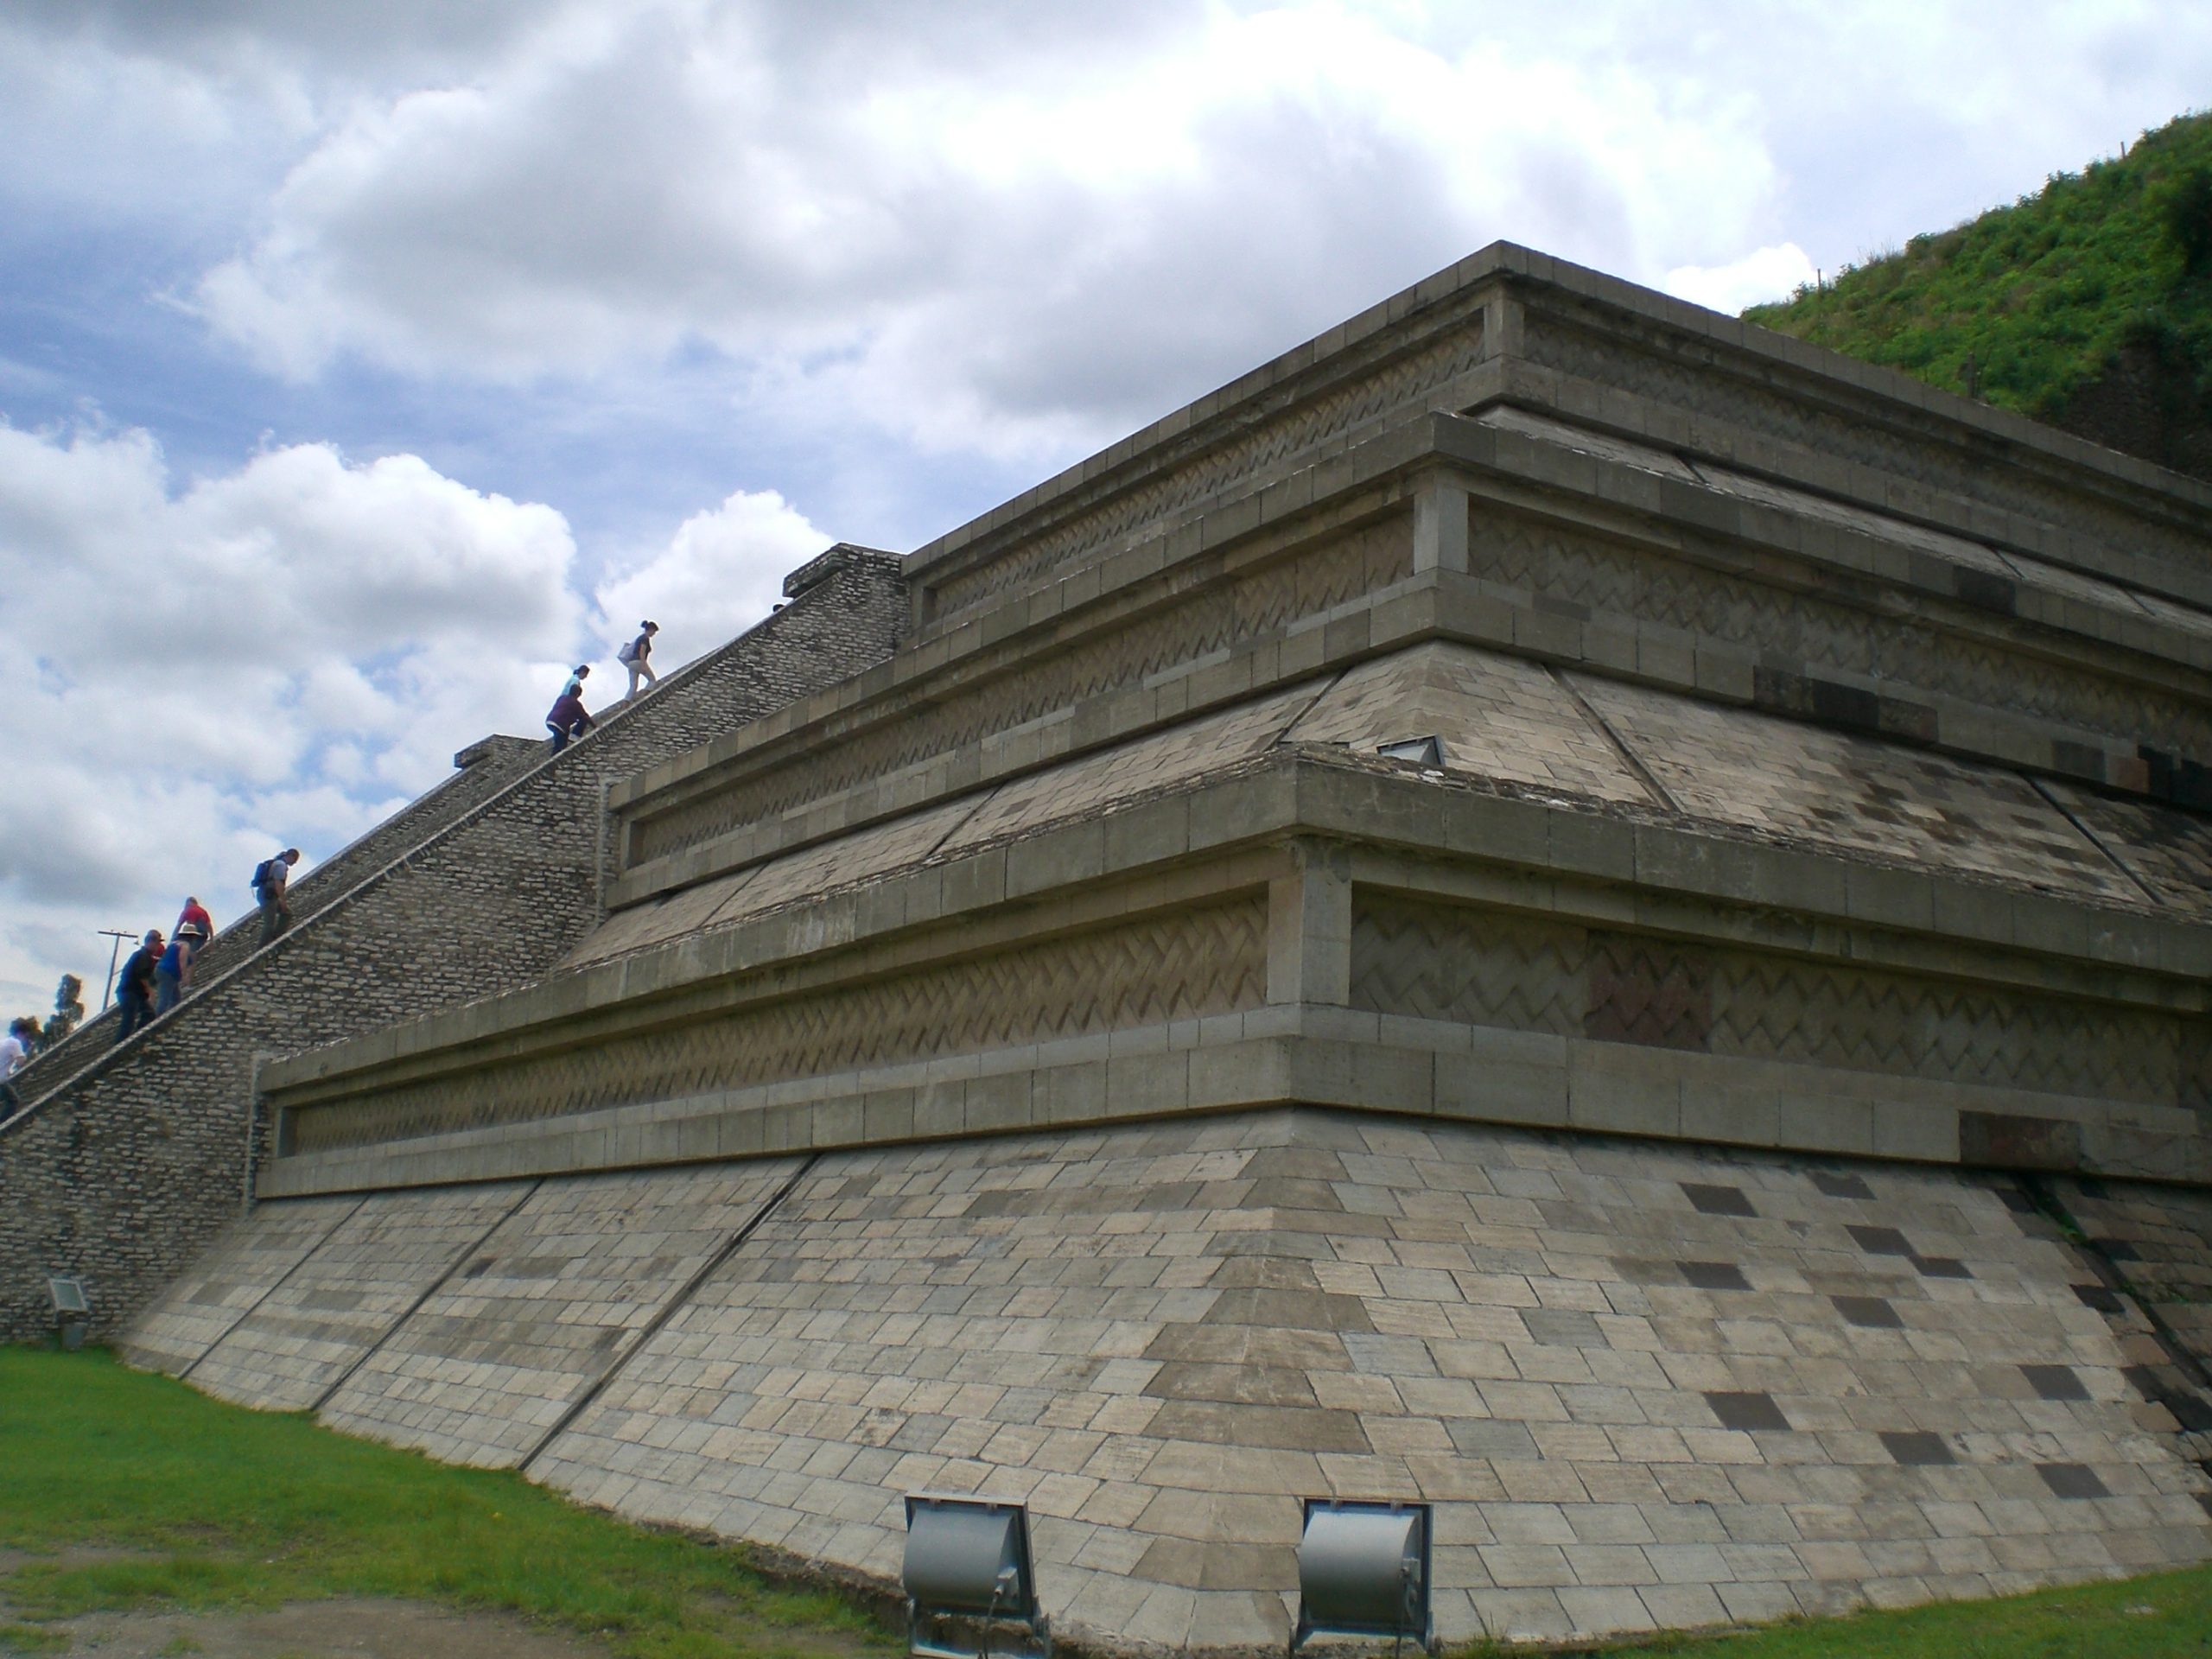 Turistas visitando la Piramide de Cholula el mayor hito de la arquitectura azteca en la actualidad